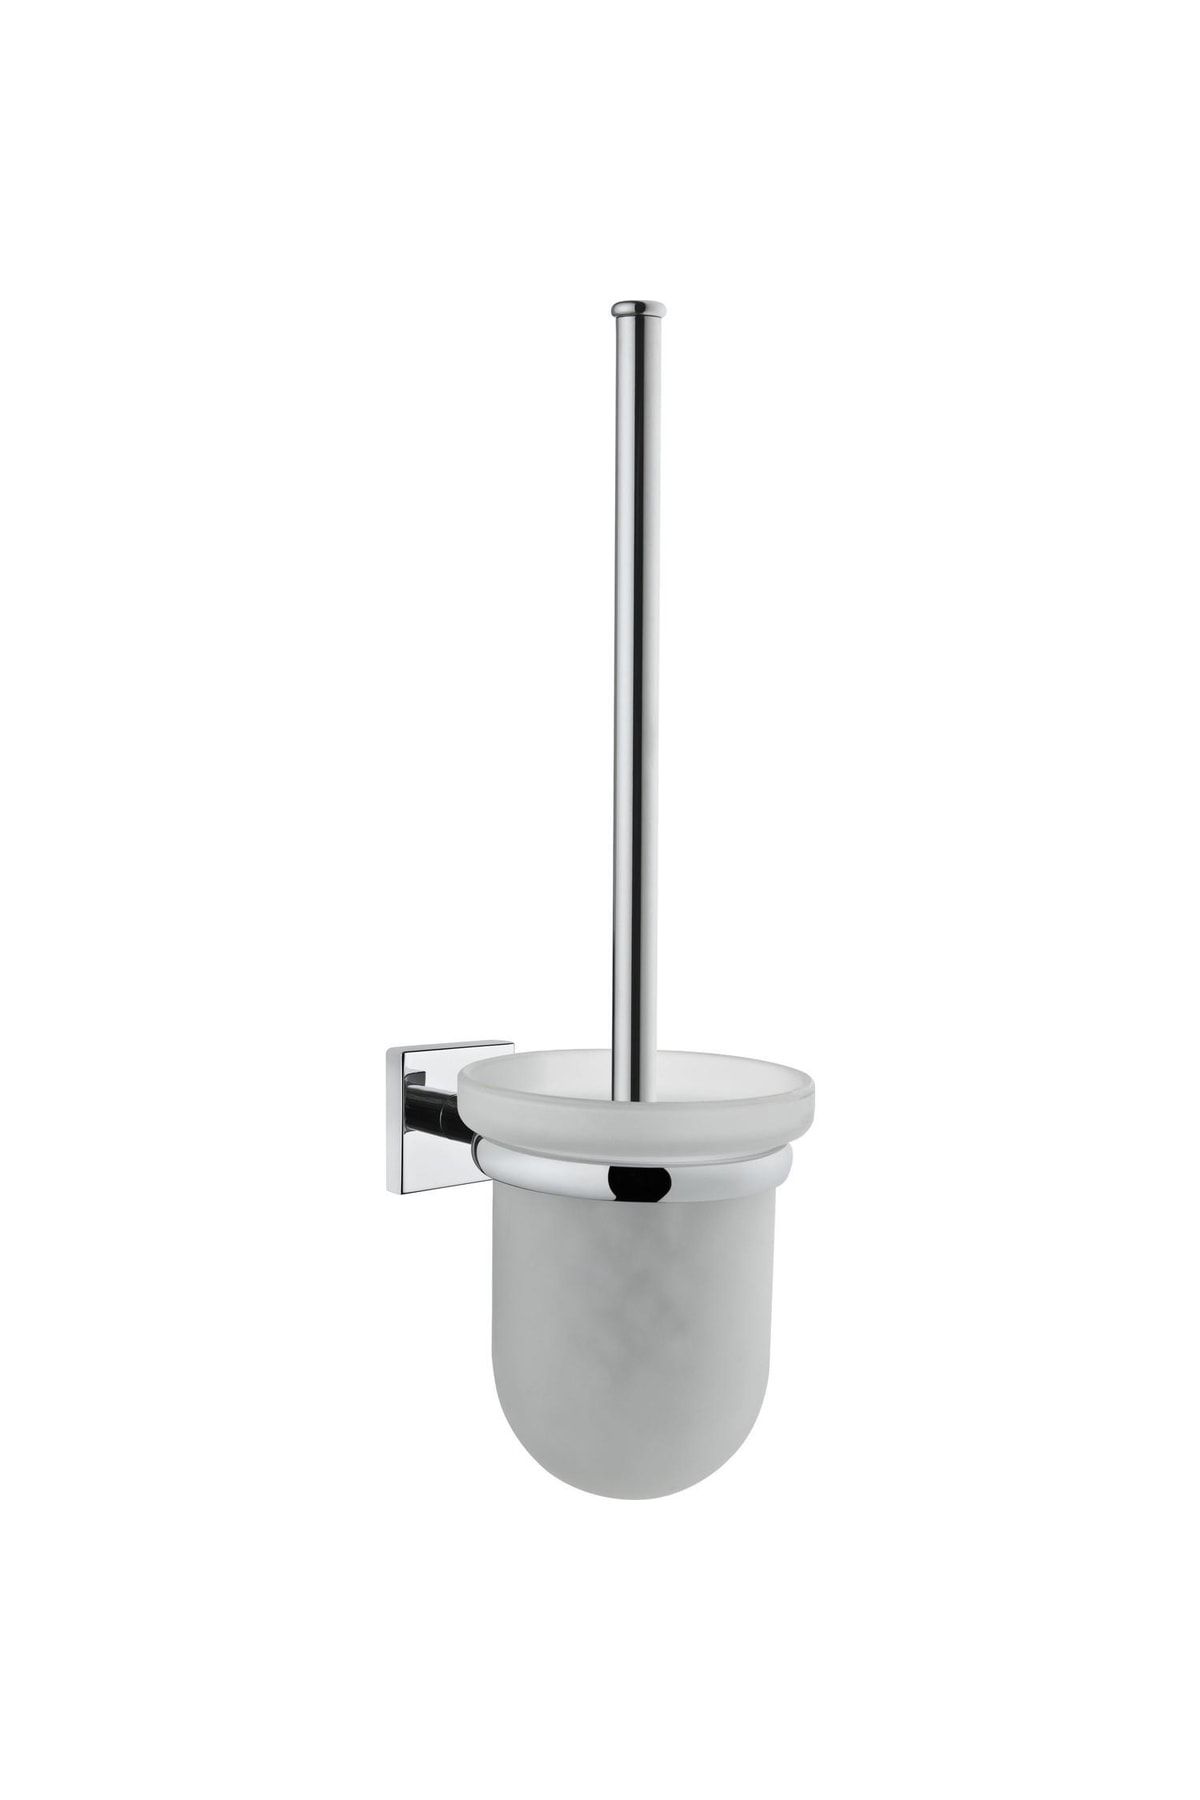 Artema Q-line Tuvalet Fırçalığı A44999